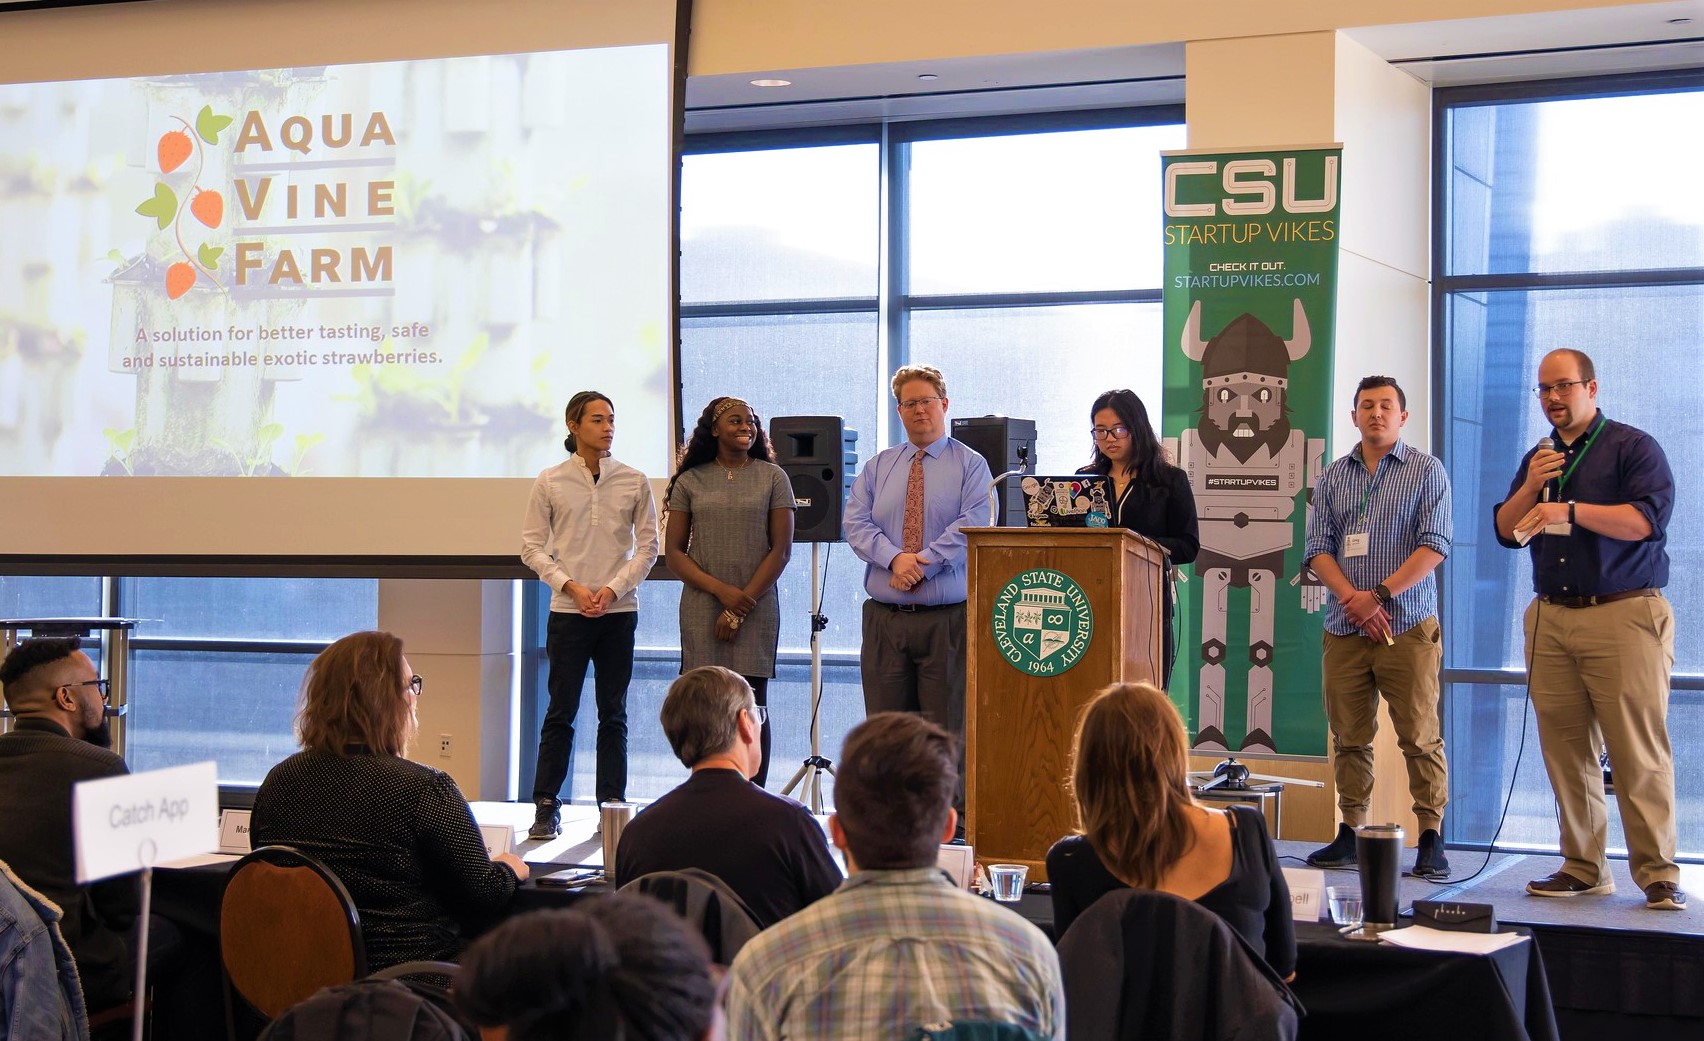 StartUp Vikes program takes CSU student entrepreneurs to the next level